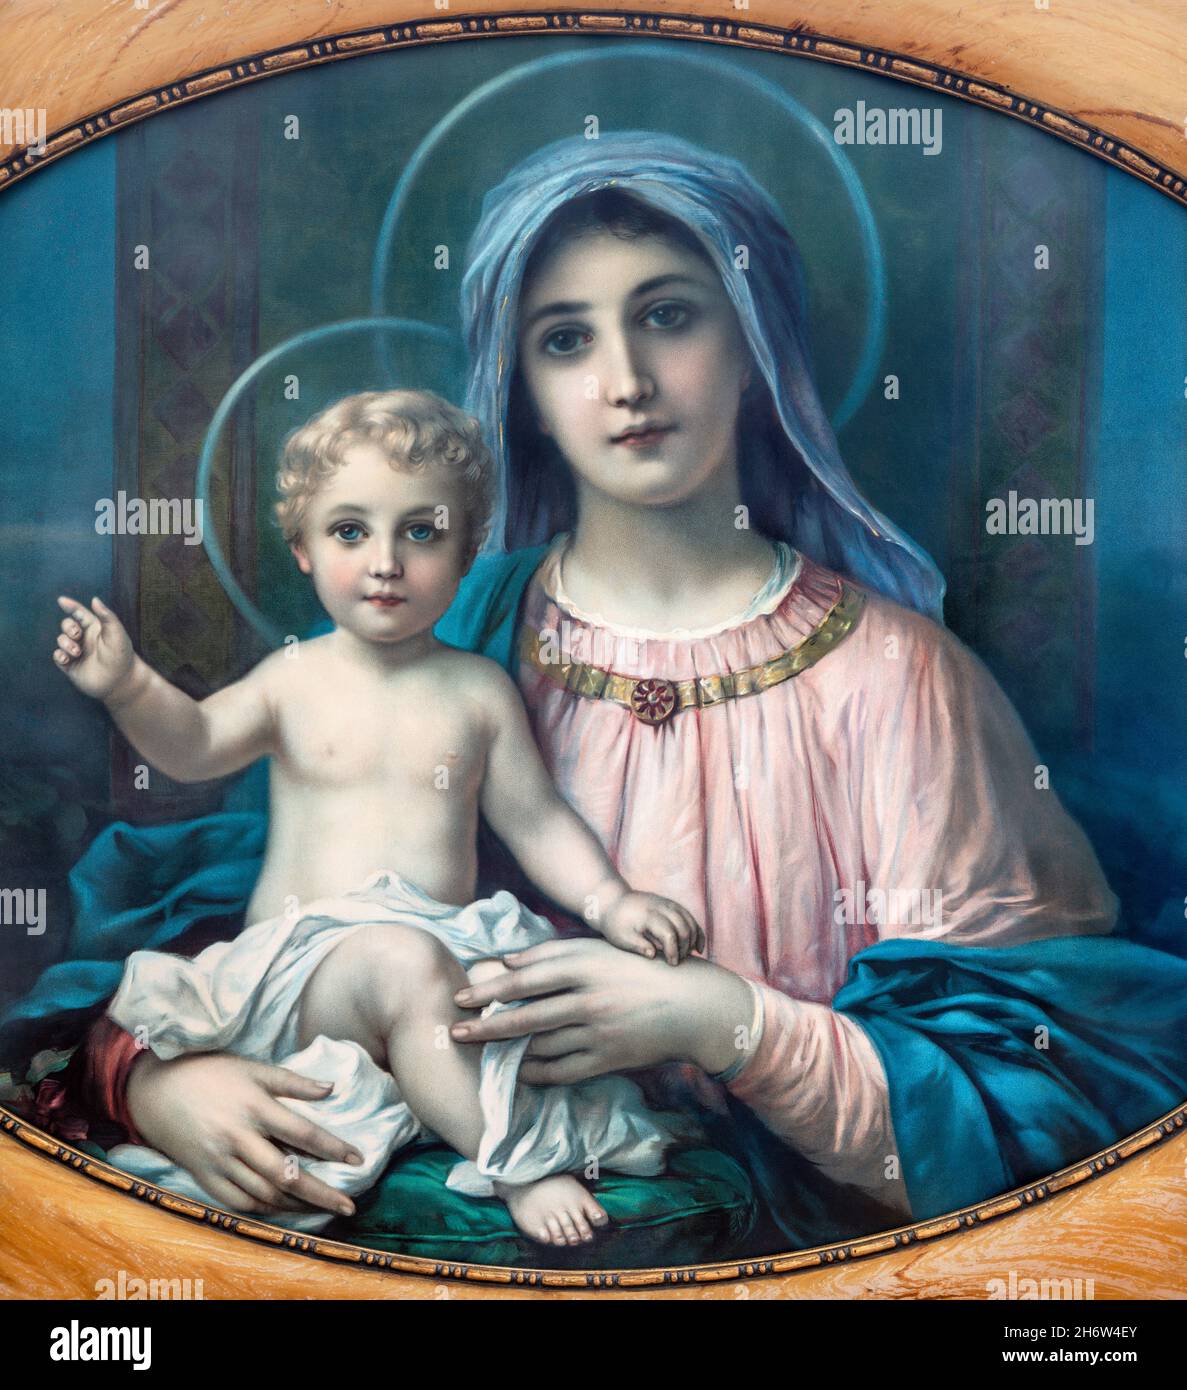 SEBECHLEBY, ESLOVAQUIA - 16 DE NOVIEMBRE de 2021: La Madre de Dios. Imagen católica típica de autor anónimo desde principios del siglo 20th. Foto de stock